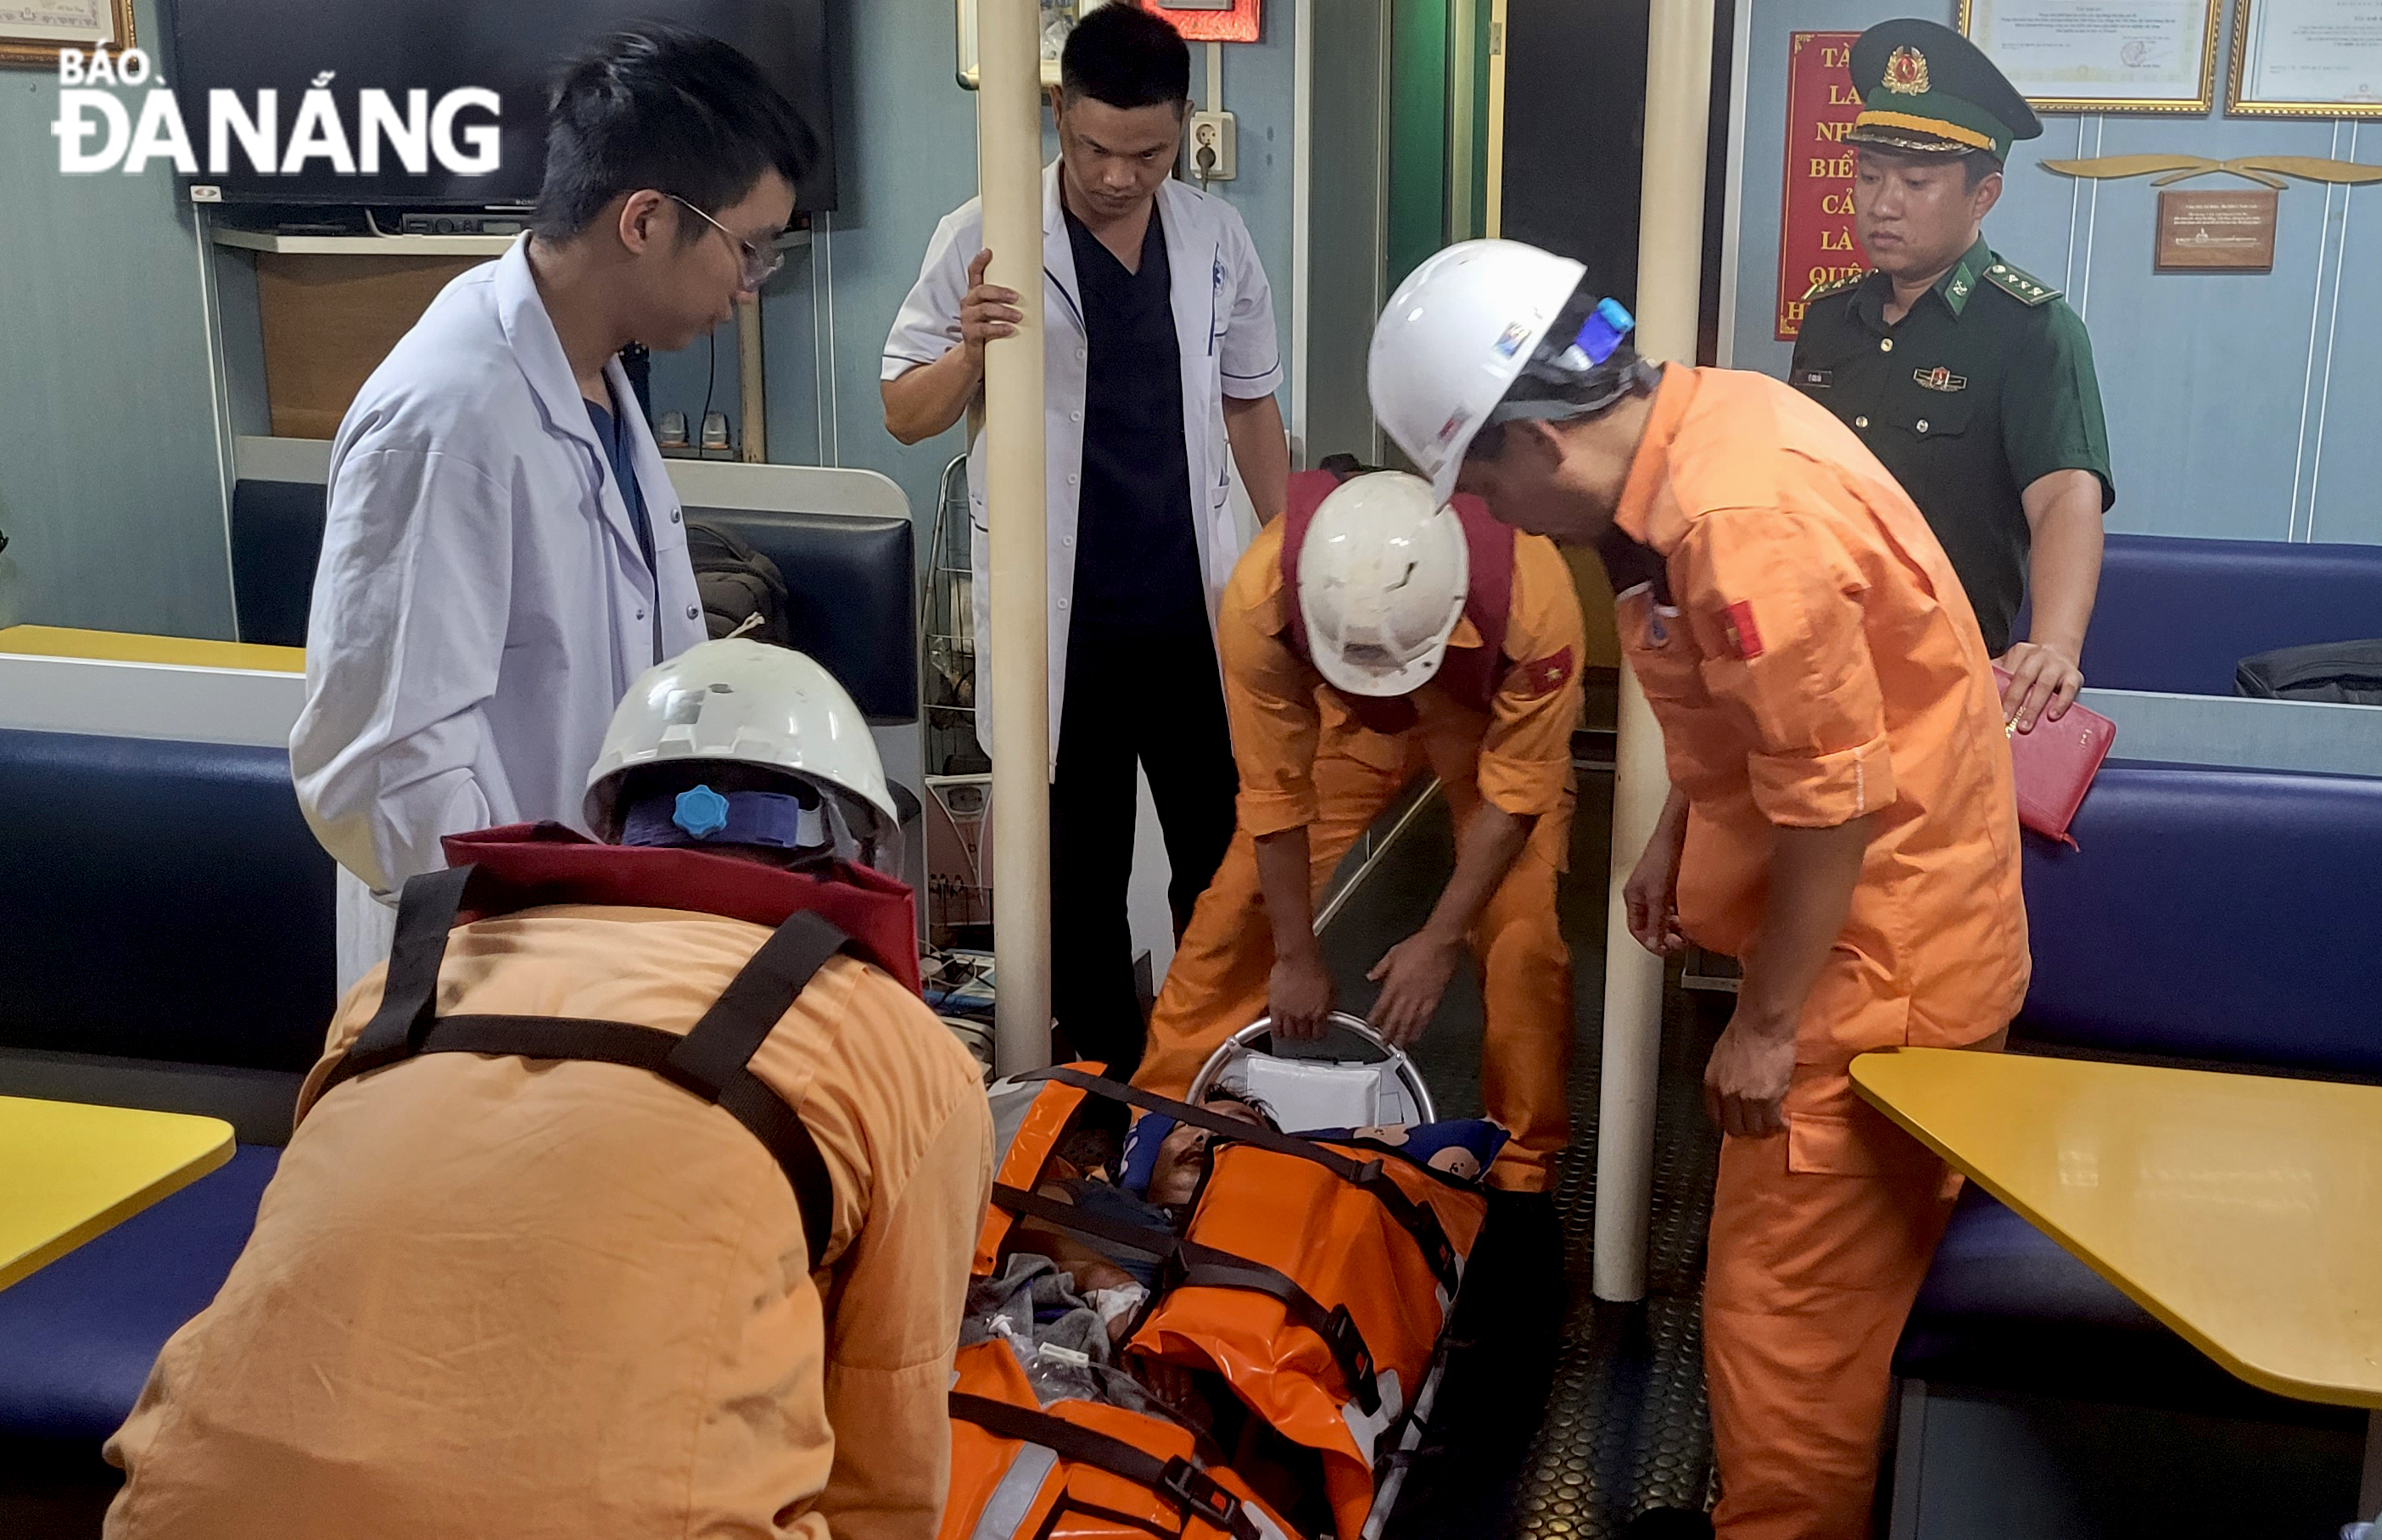 Lúc 5 giờ 15 sáng nay, Danang MRCC đã được đưa thuyền viên gặp nạn trên biển về đến Đà Nẵng an toàn. Ảnh: Danang MRCC cung cấp